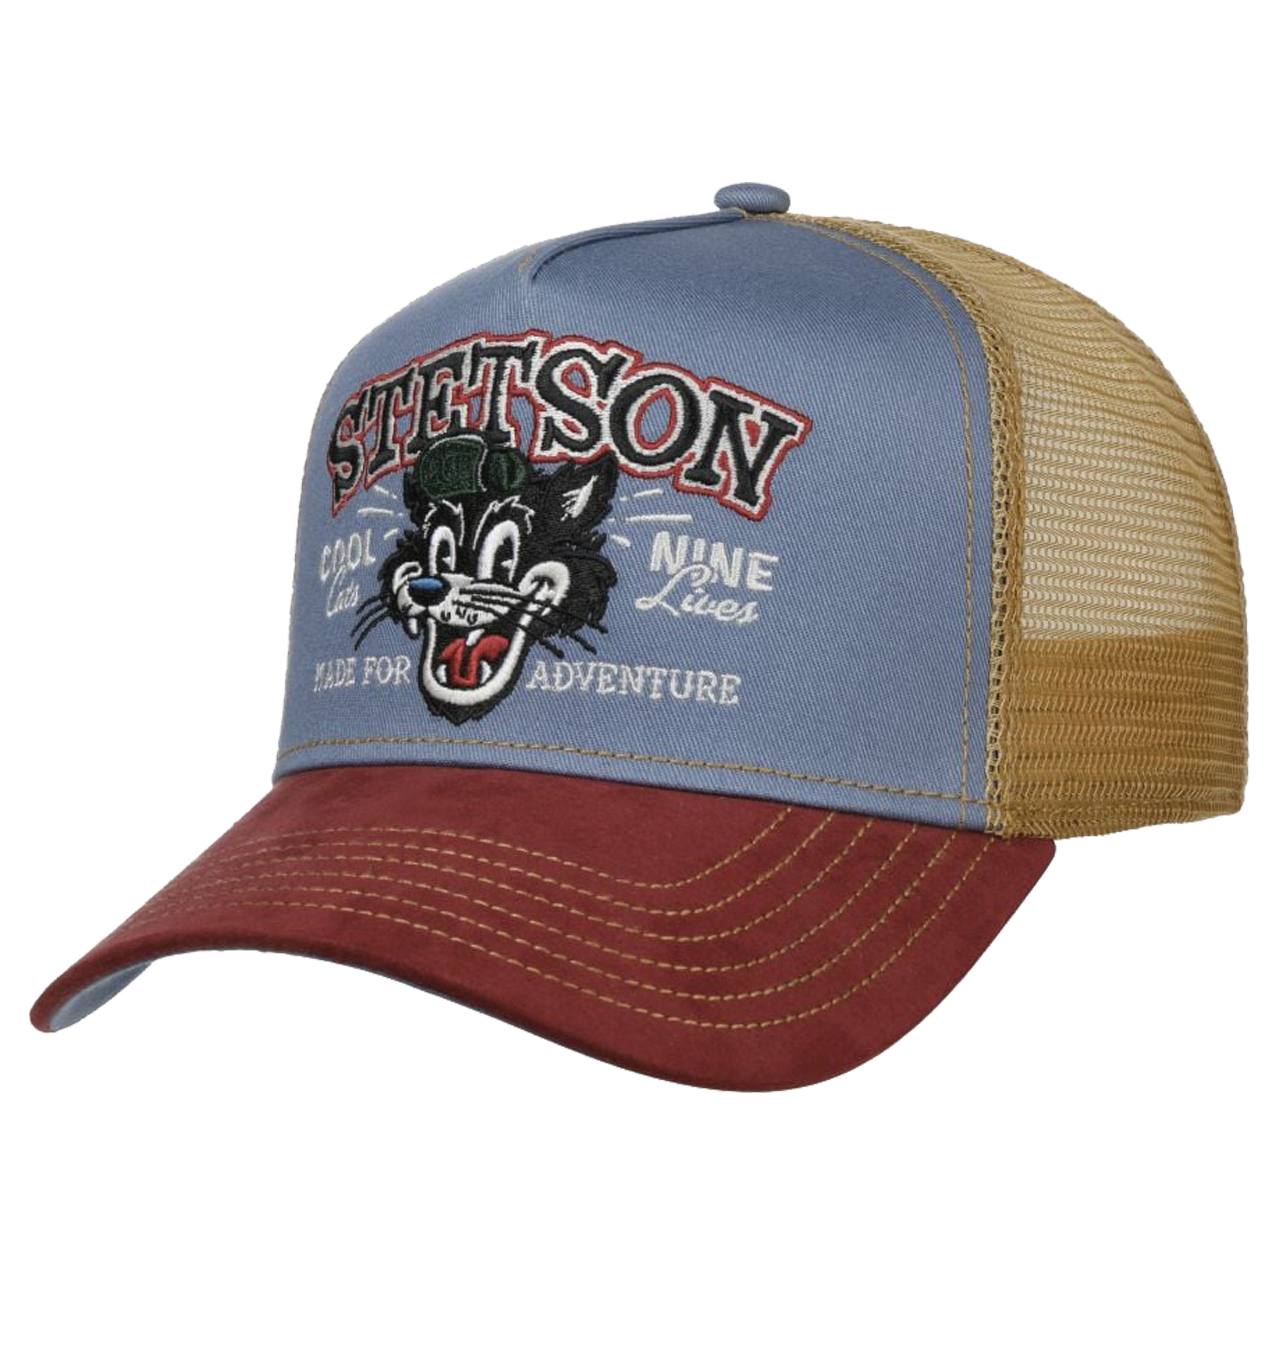 Stetson - Cool Cats Trucker Cap - Red